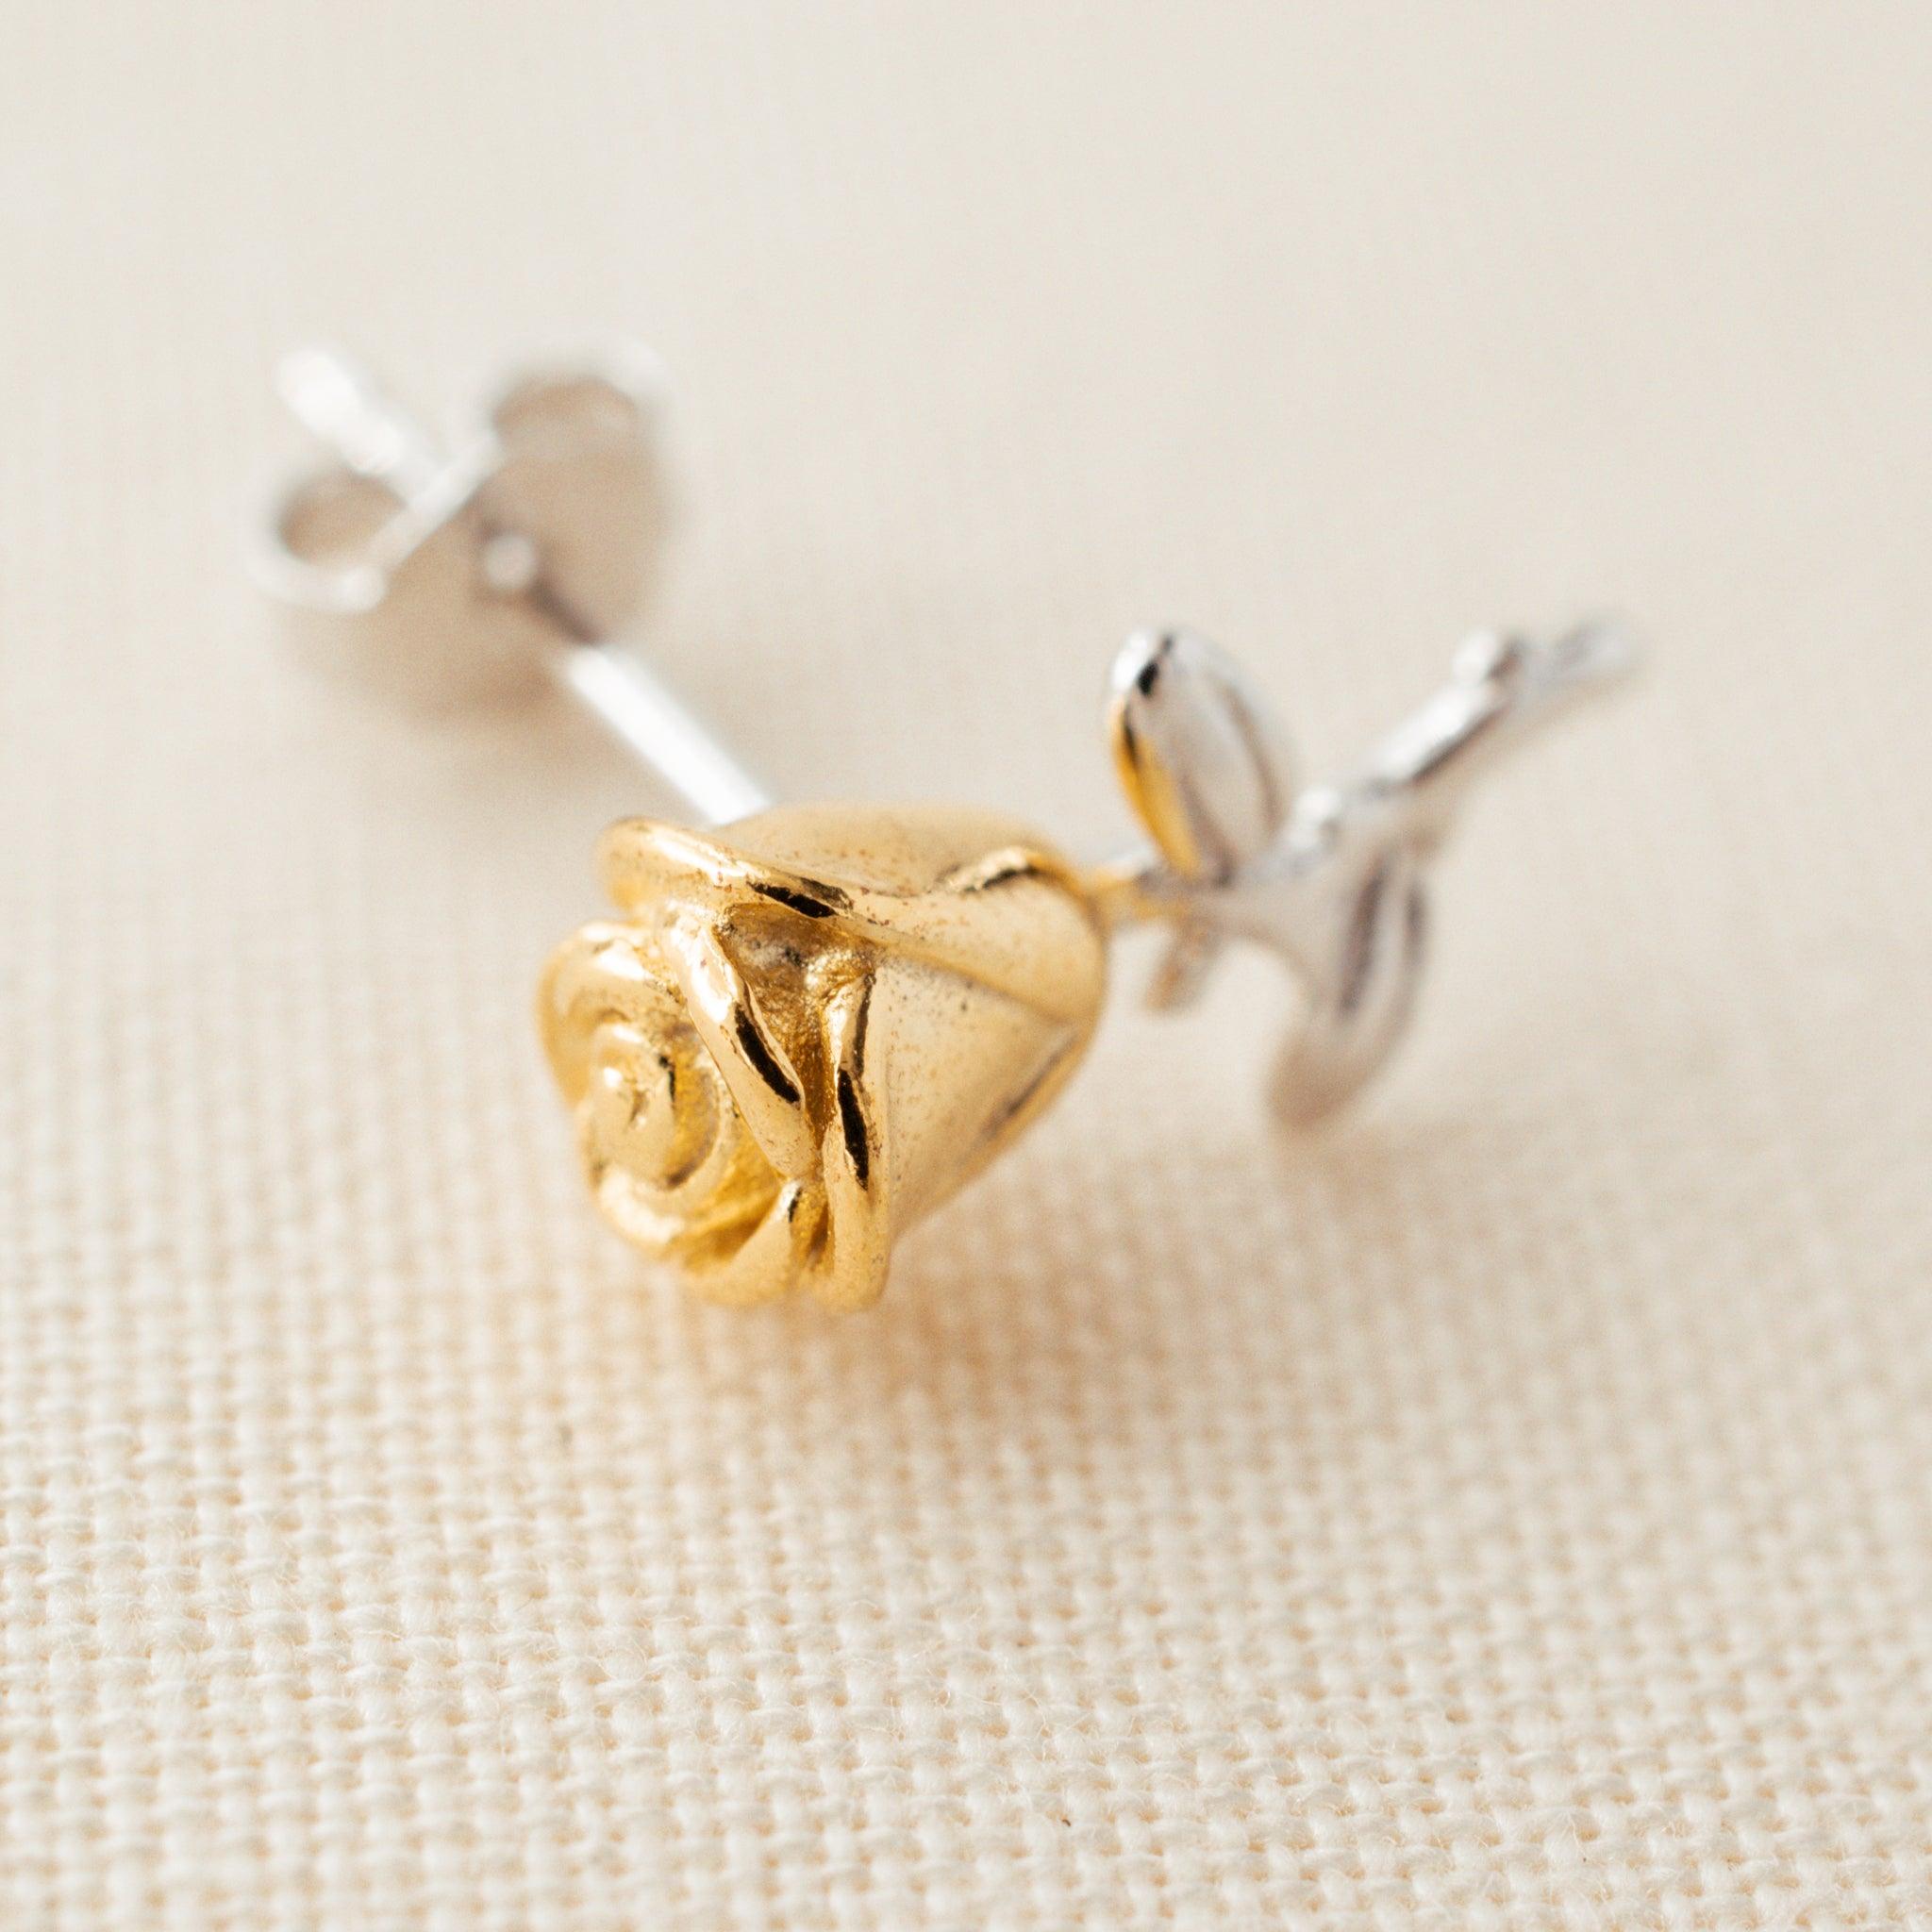 Rose Flower Stud Earrings - avantejewel.com